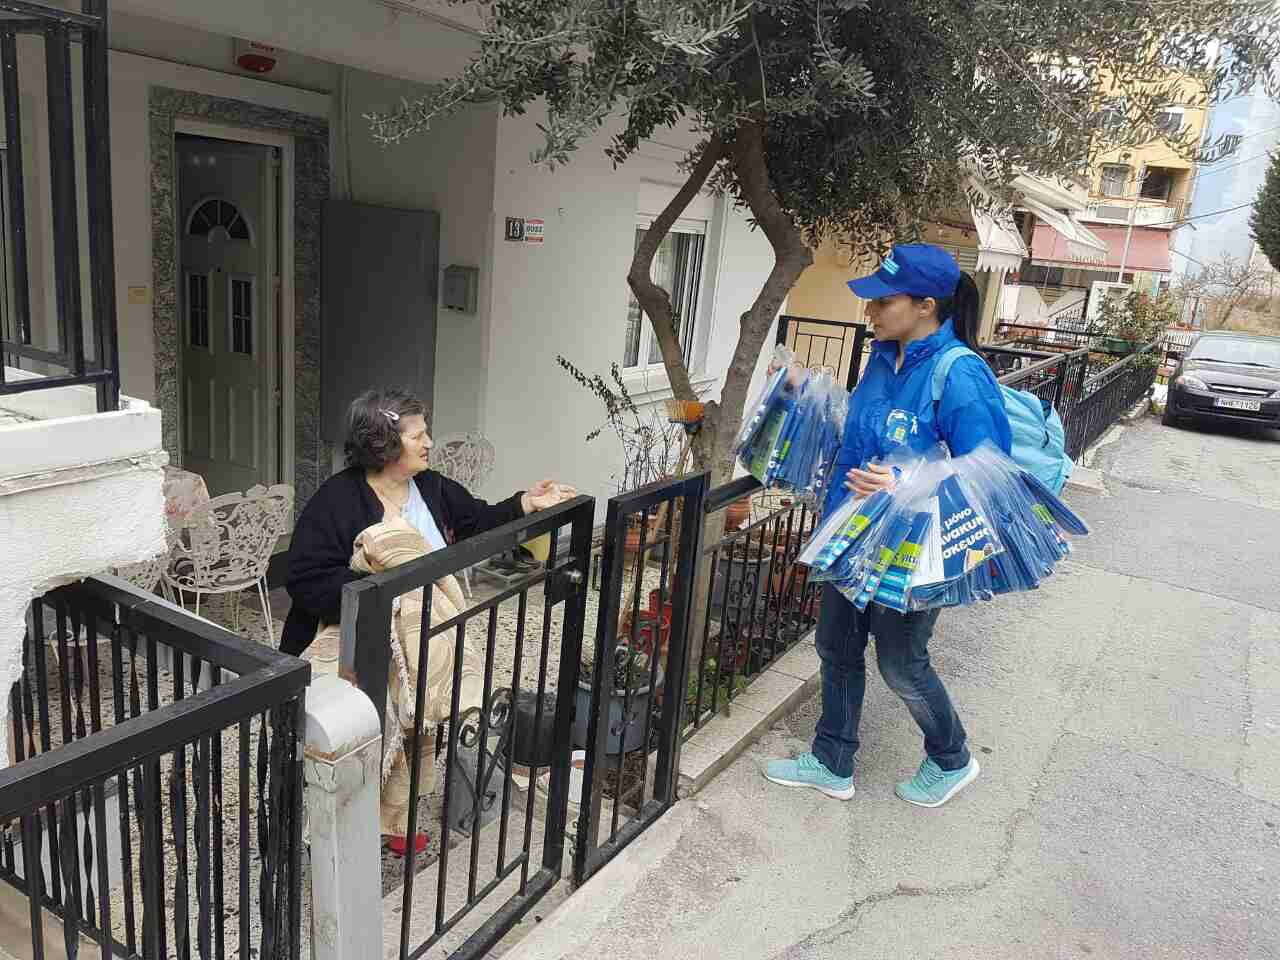 38.000 νοικοκυριά έλαβαν… μπλε τσάντα ανακύκλωσης σε δήμο της Θεσσαλονίκης! (ΦΩΤΟΓΡΑΦΙΕΣ)